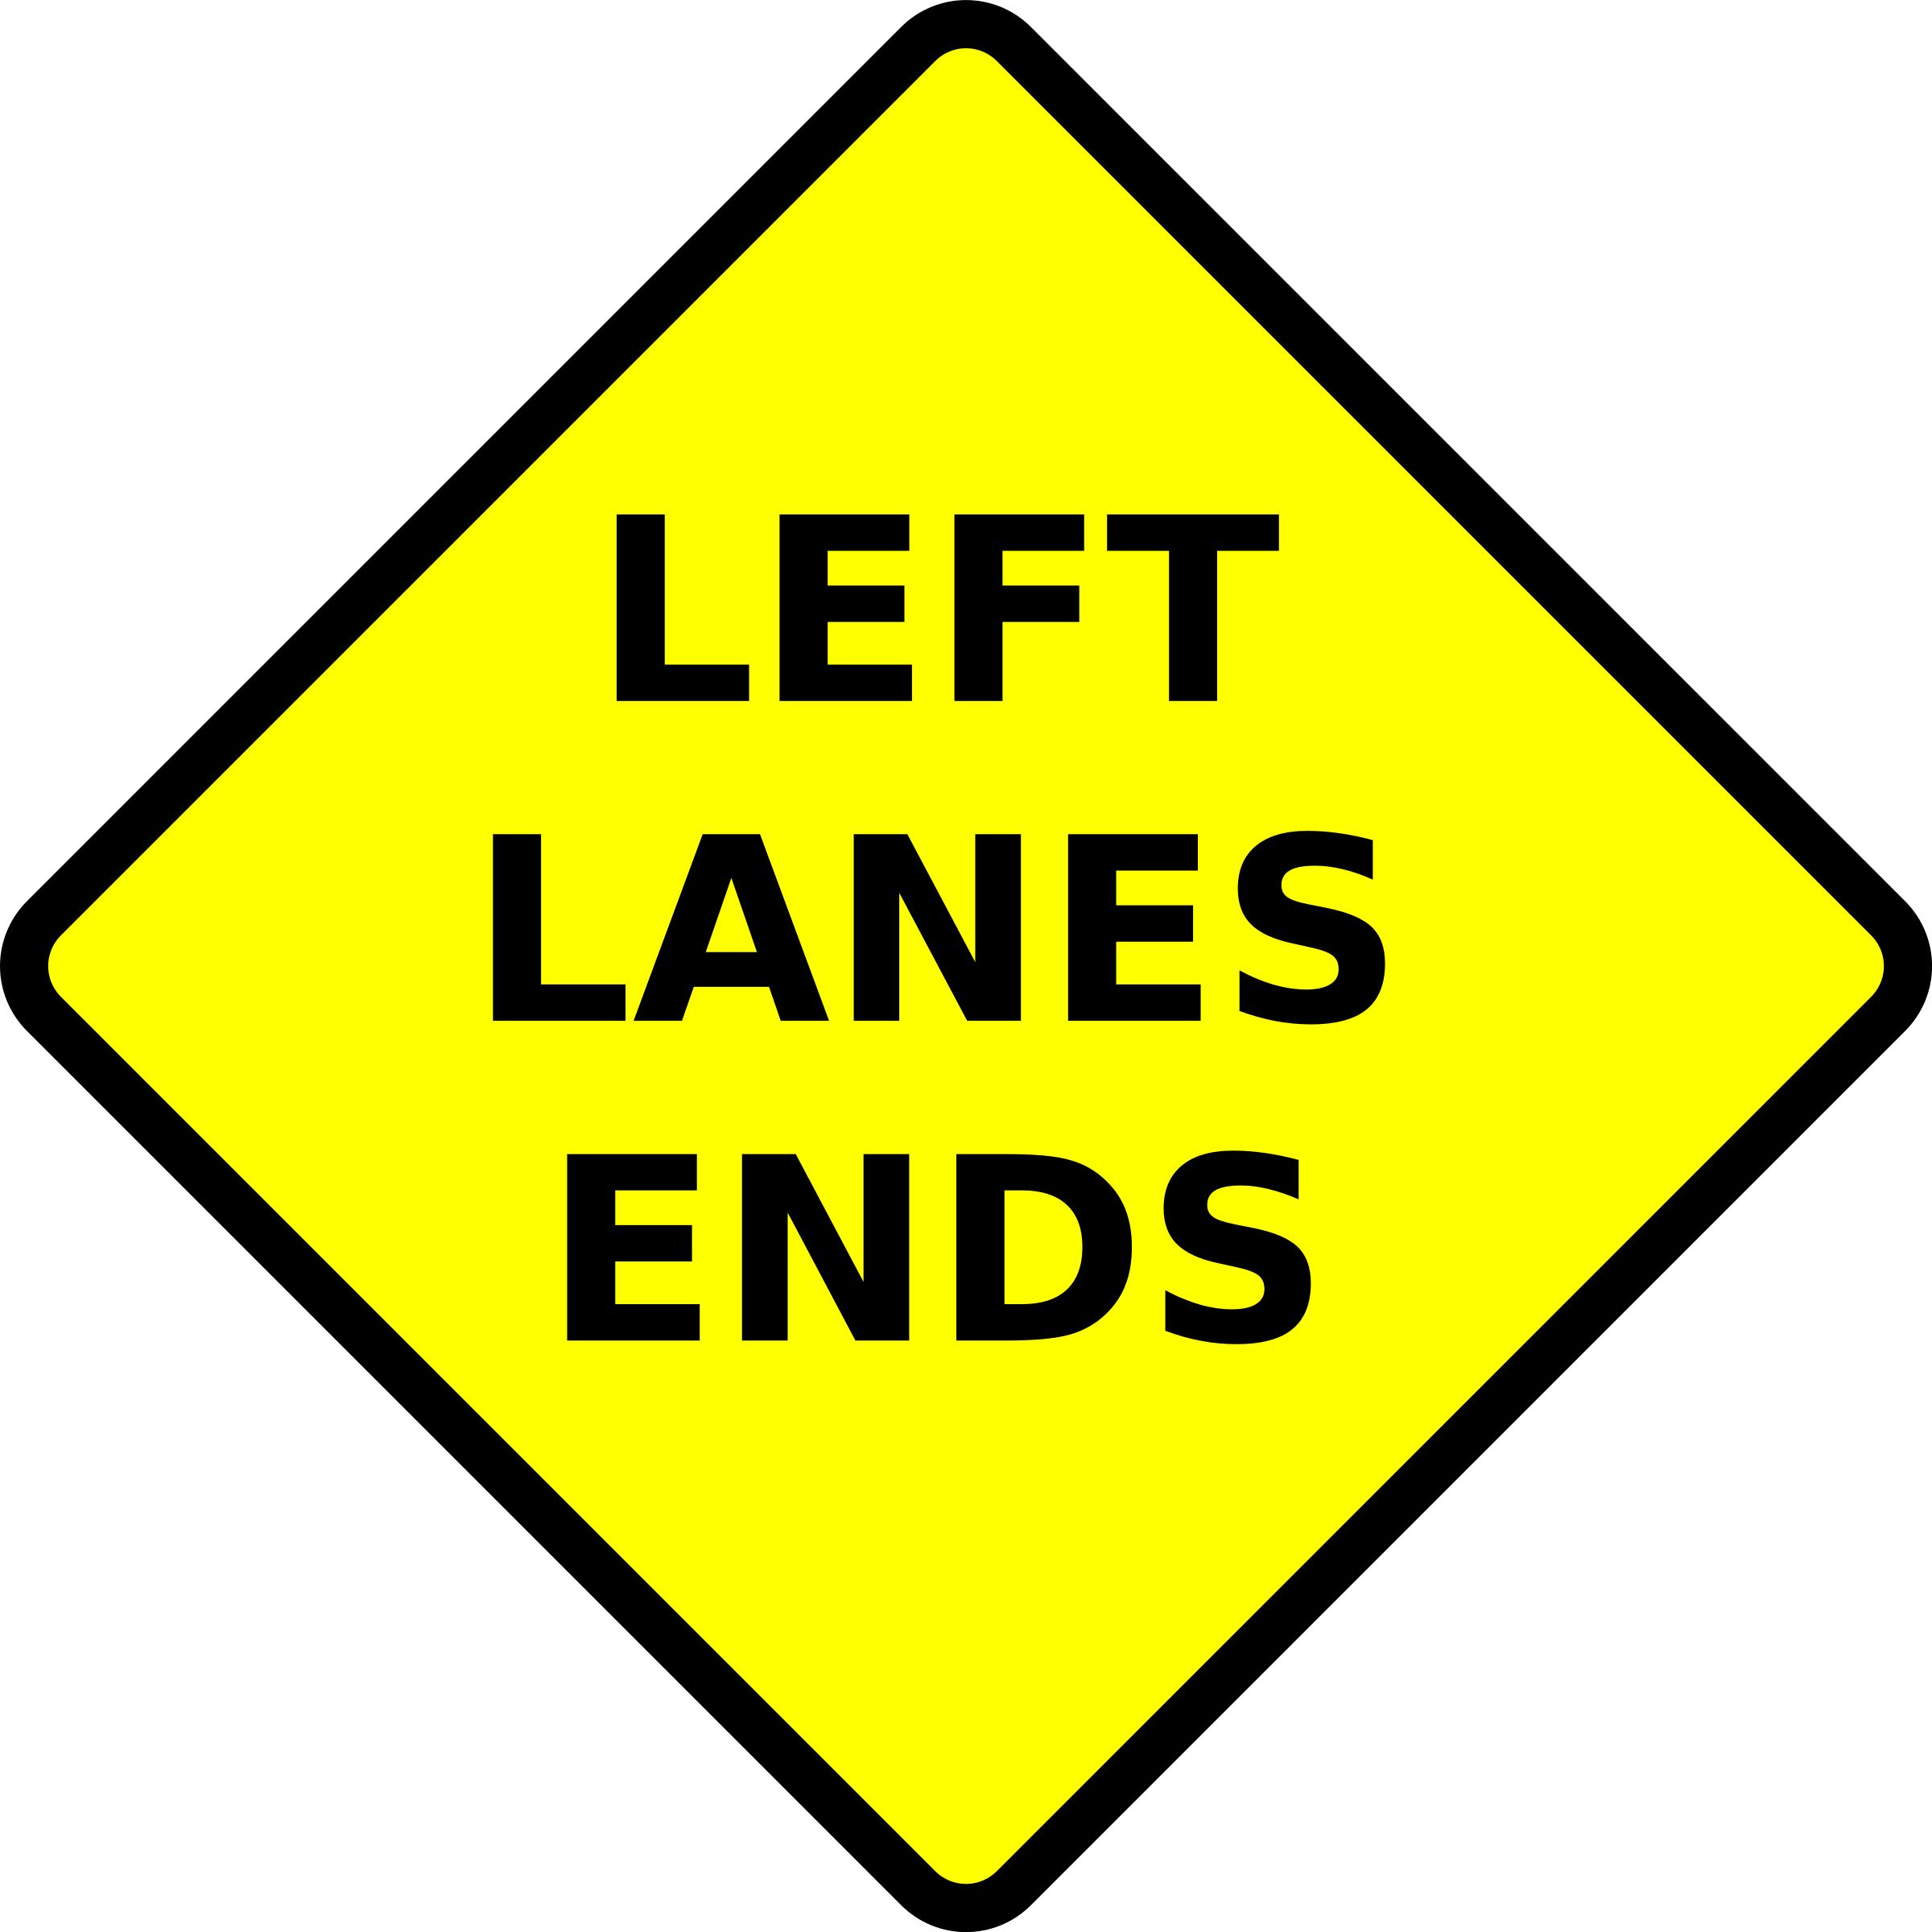 caution-left lane ends png